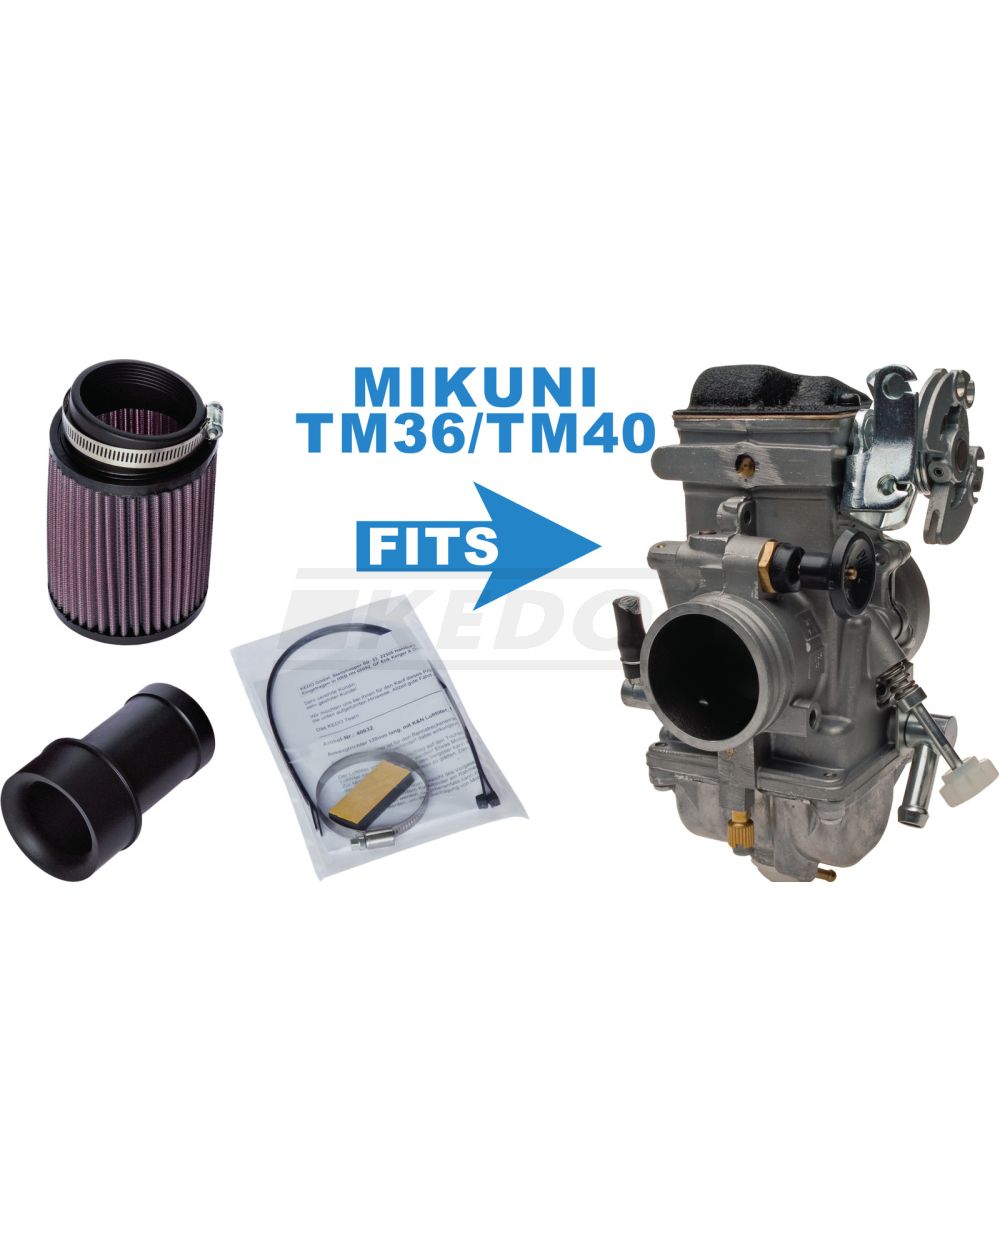 SR500 XT500 Ansaugtrichter Set komplett für Mikuni TM36 TM40 mit K&N Rennfilter 